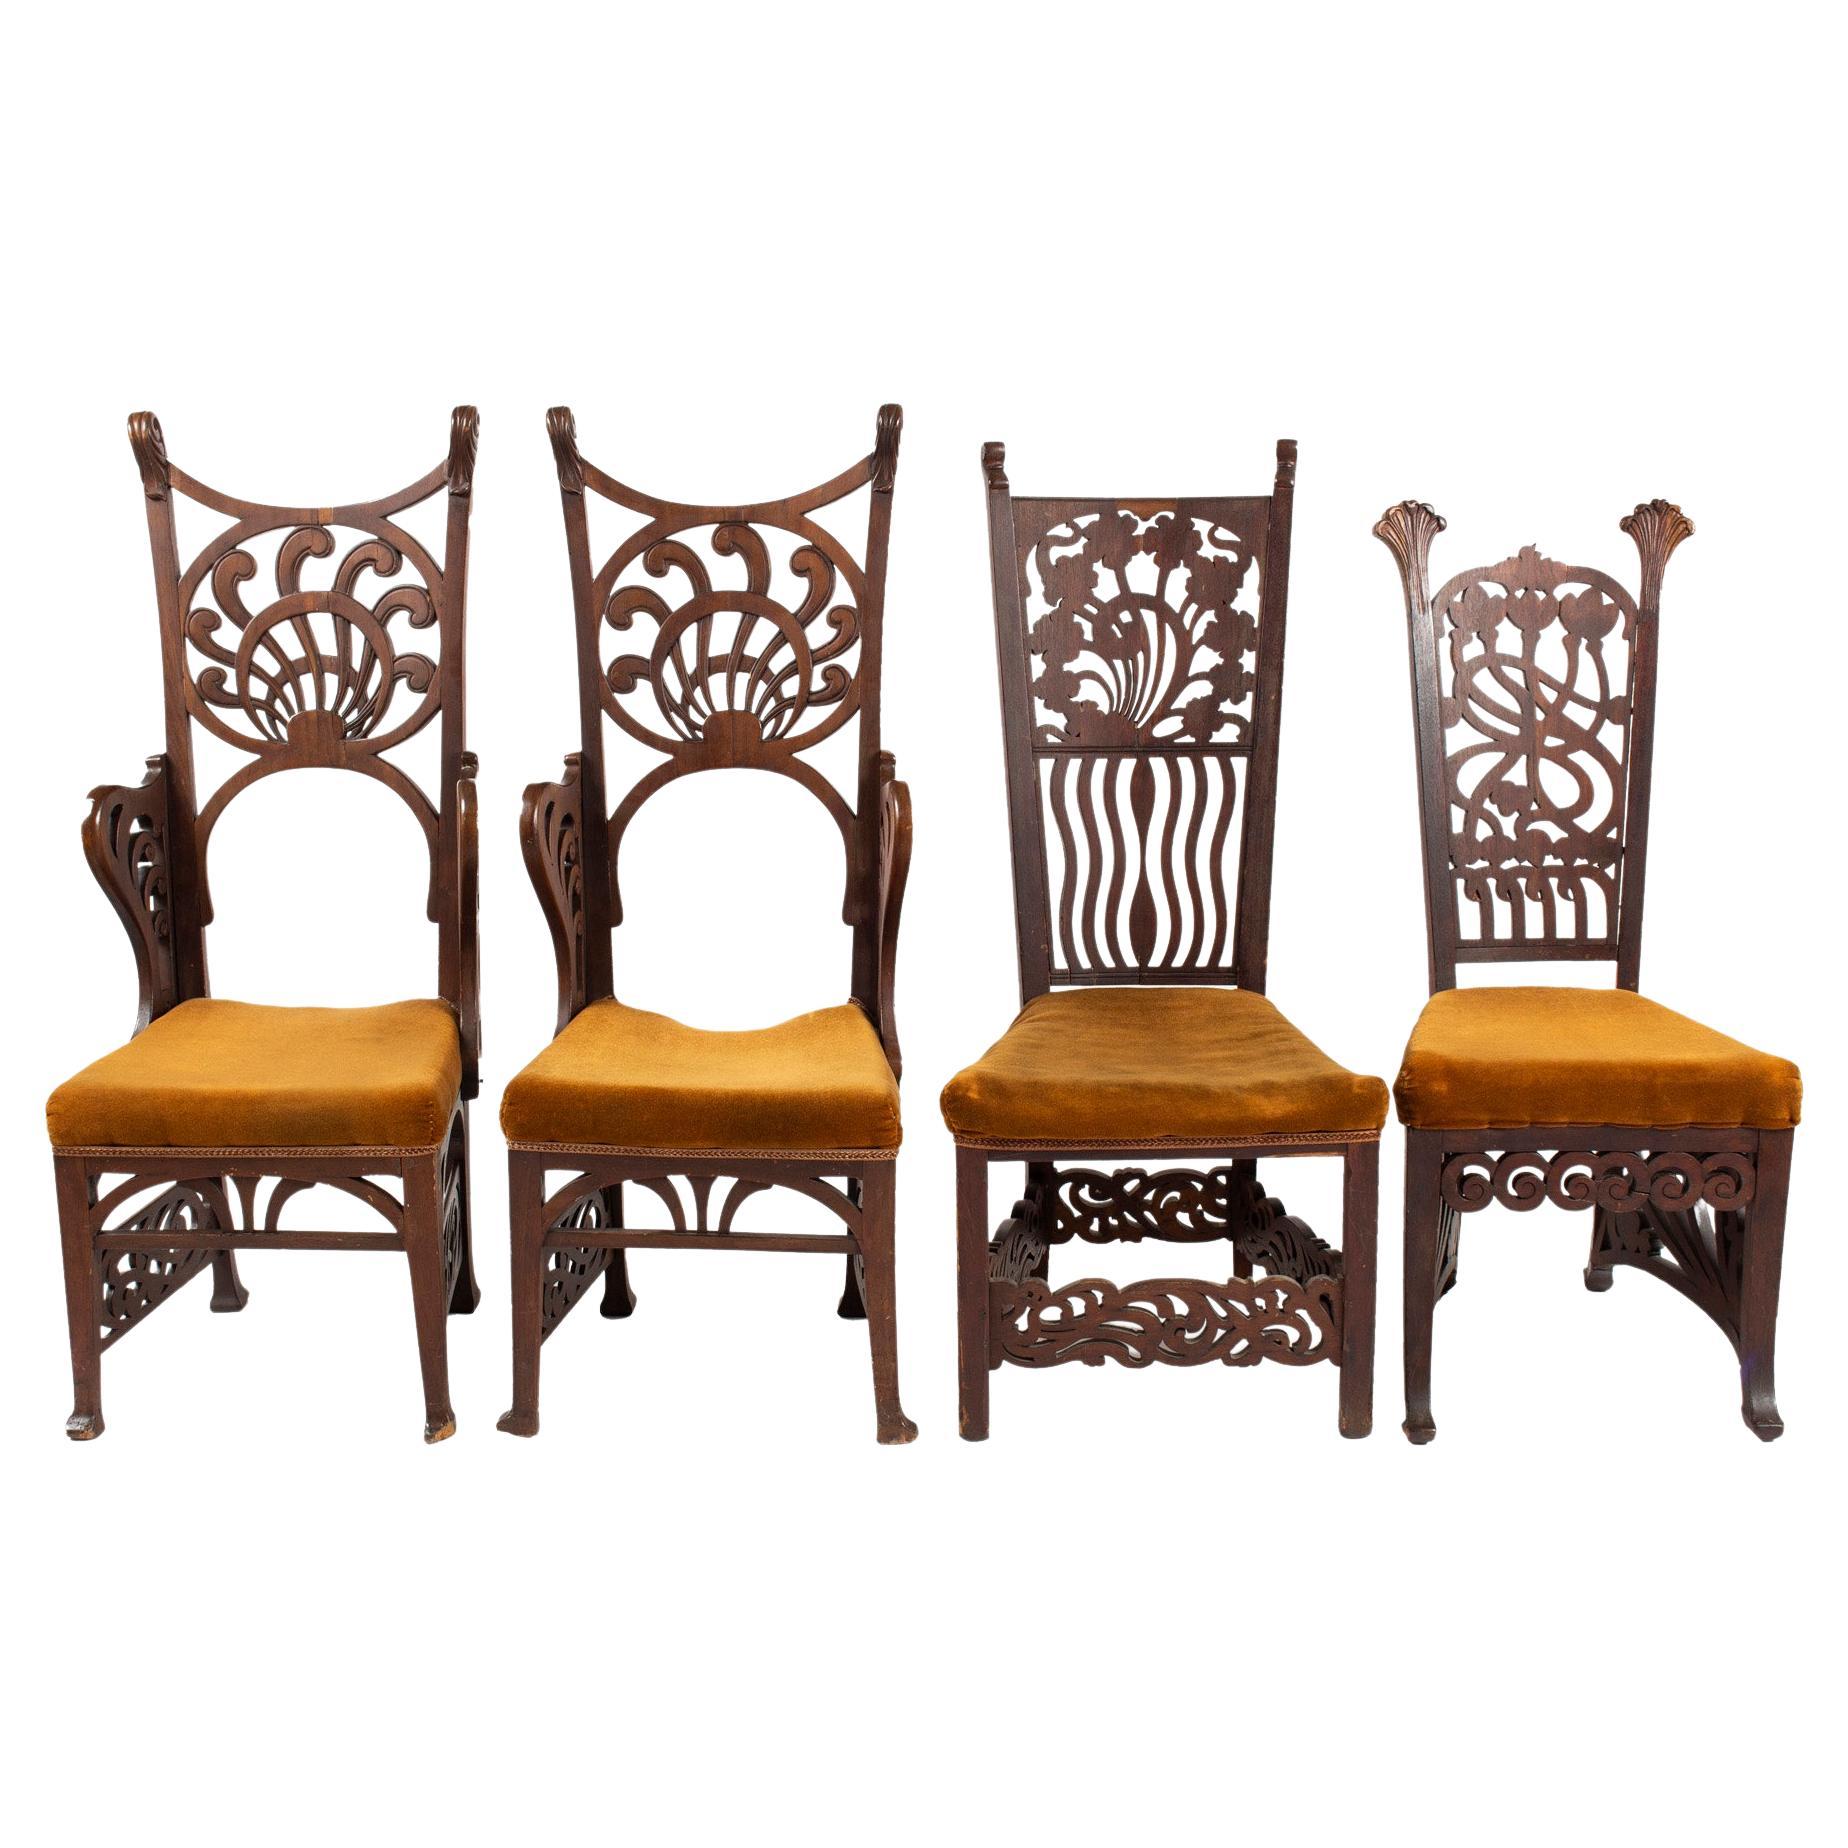 Unique Rippl-Rónai József Art Nouveau Chairs, circa 1900s For Sale